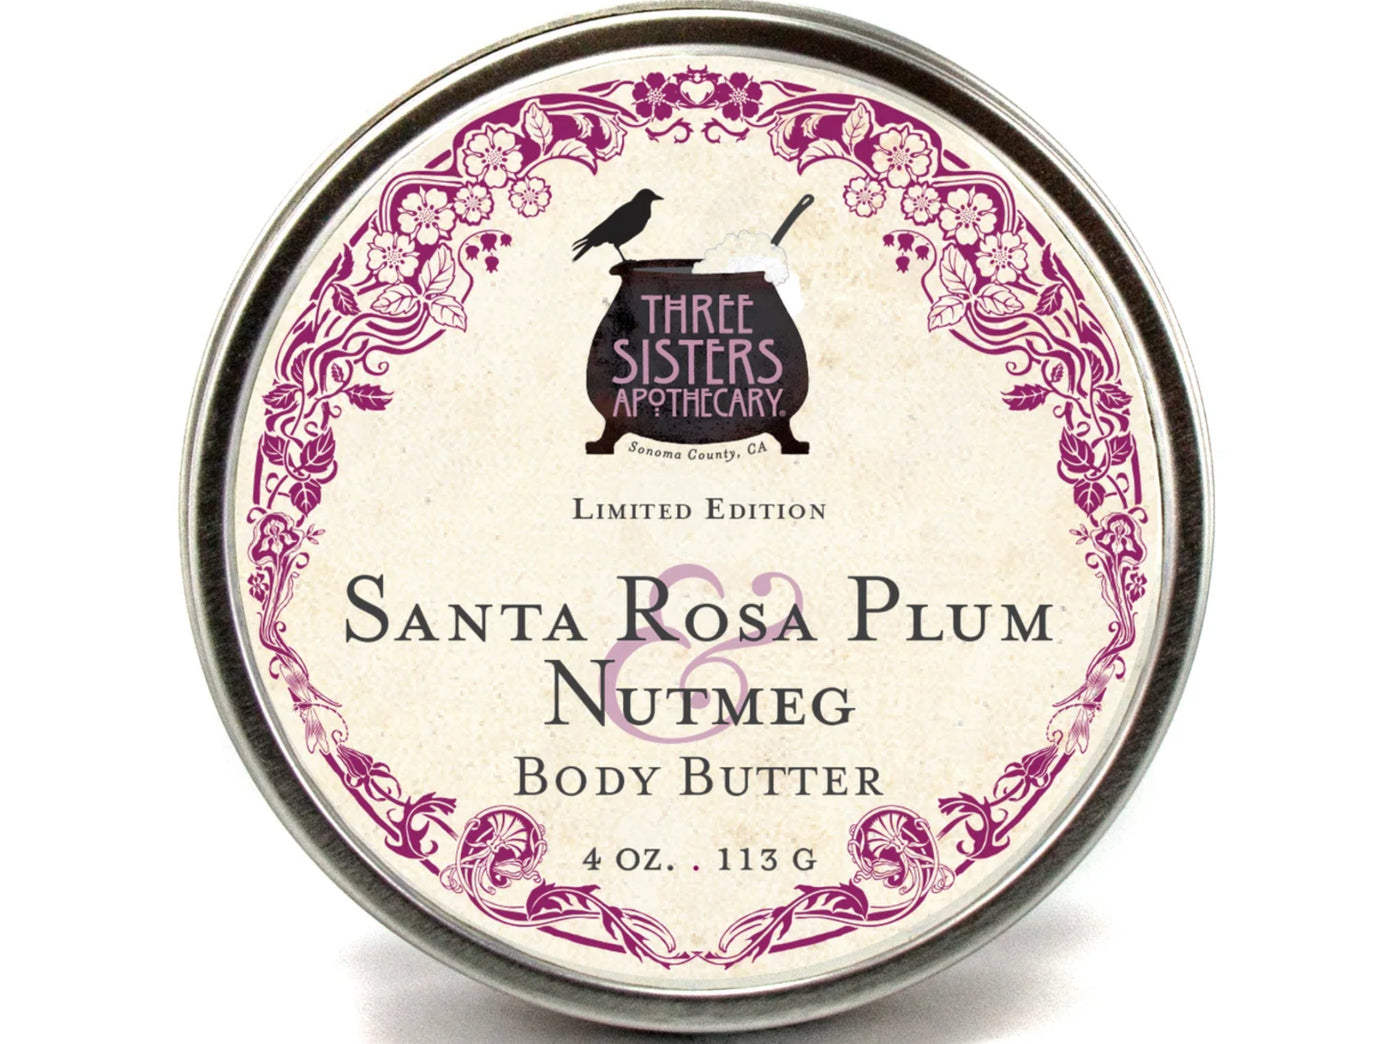 Santa Rosa Plum Nutmeg Body Butter